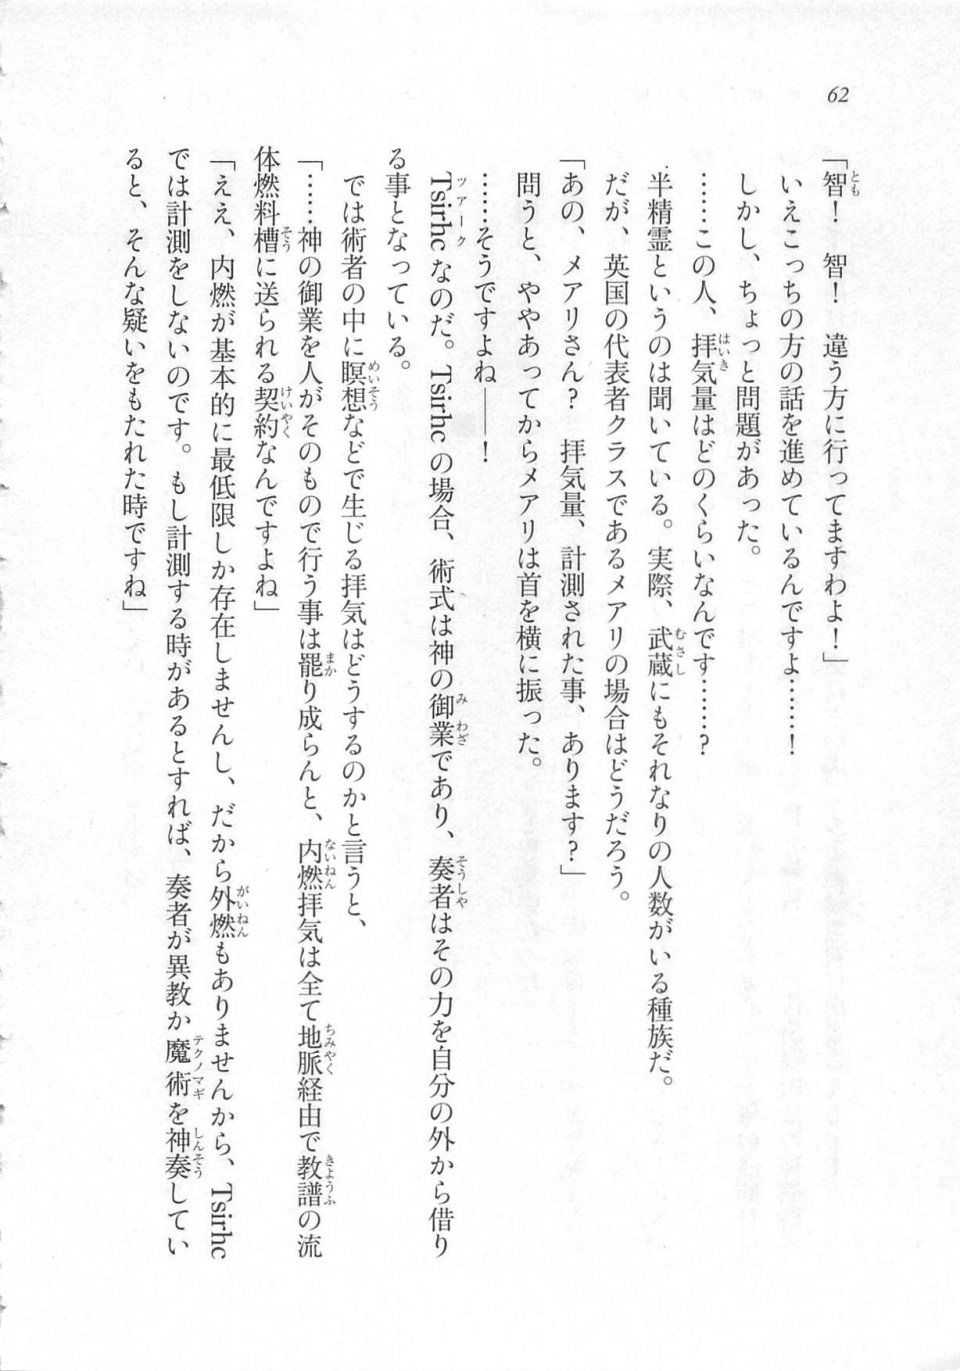 Kyoukai Senjou no Horizon LN Sidestory Vol 3 - Photo #66